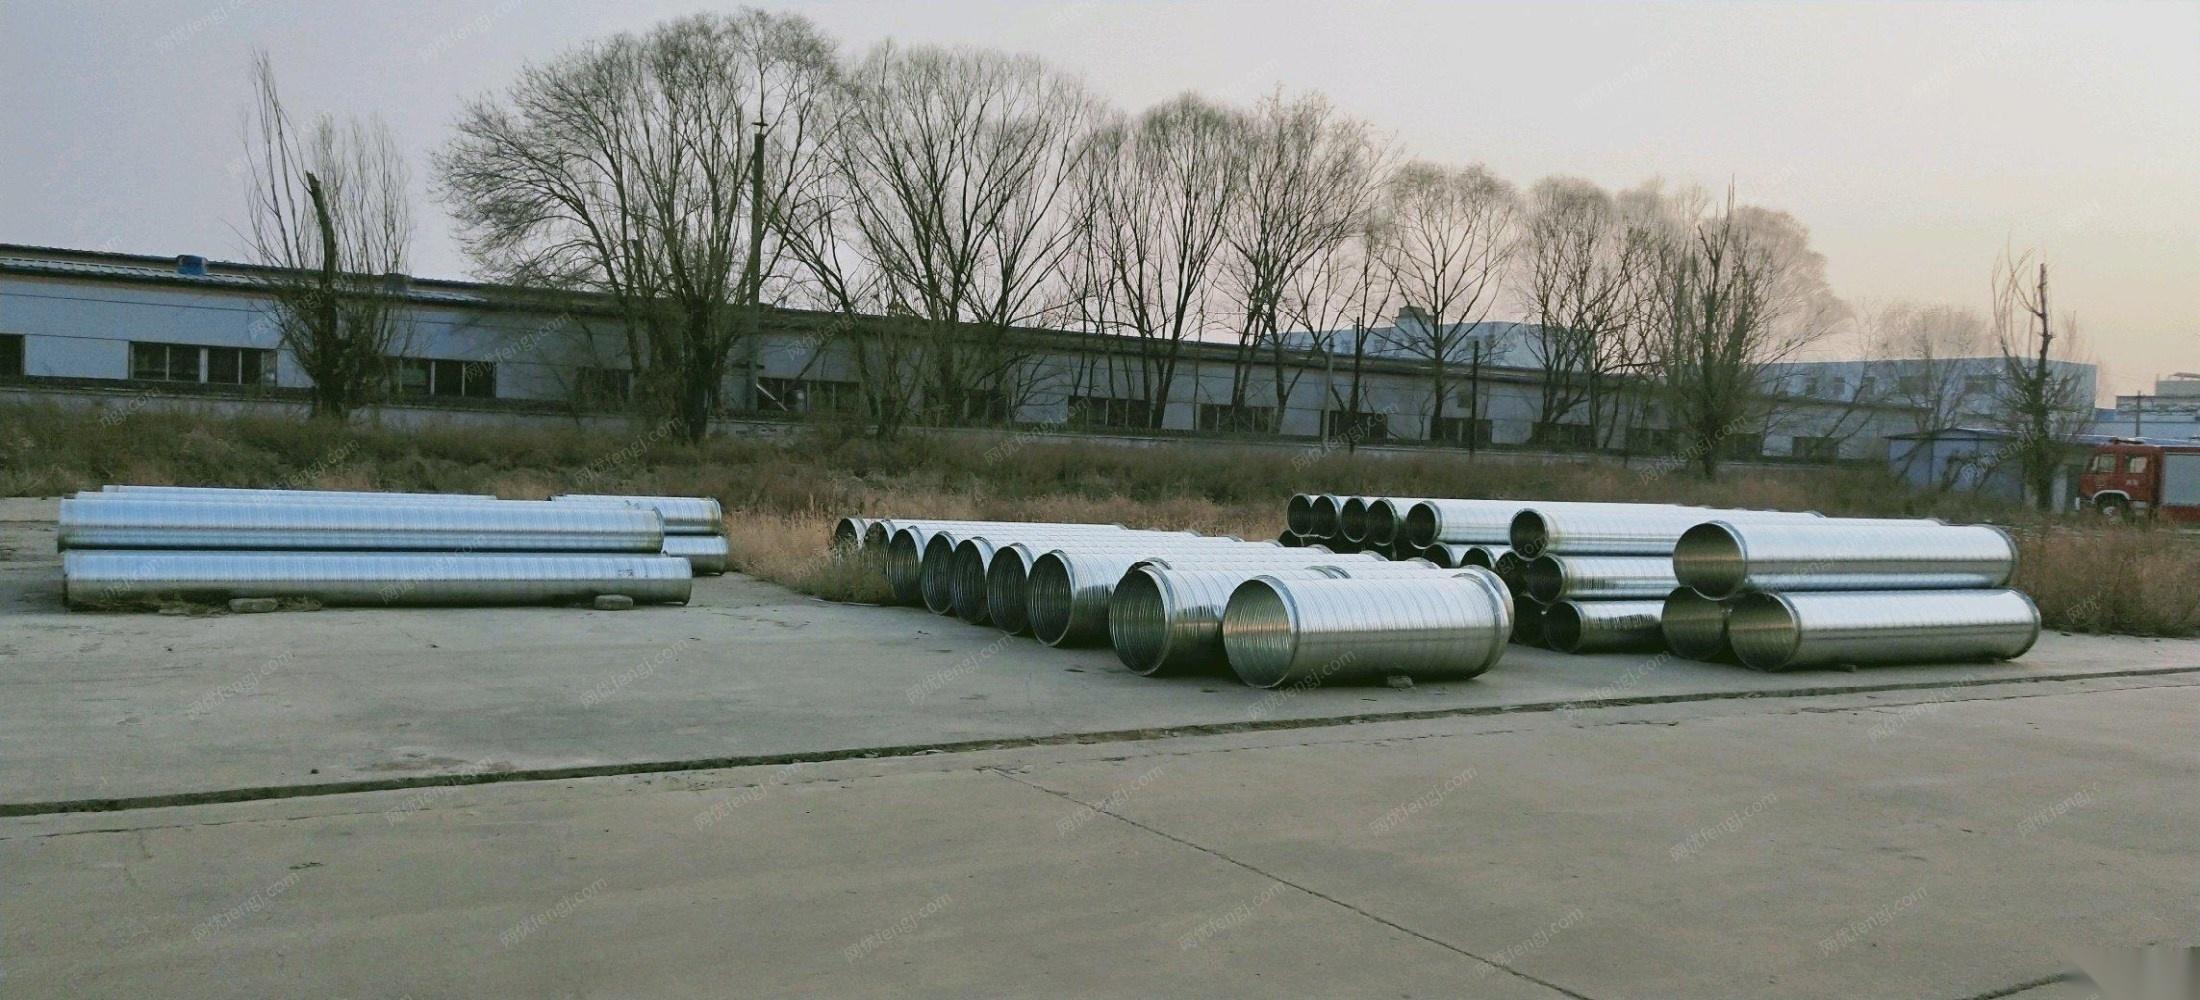 山西晋中特价处理一批0.5，直径300，400的螺旋管，可带三道加强筋，现货五百多米,自提27-28元/米.